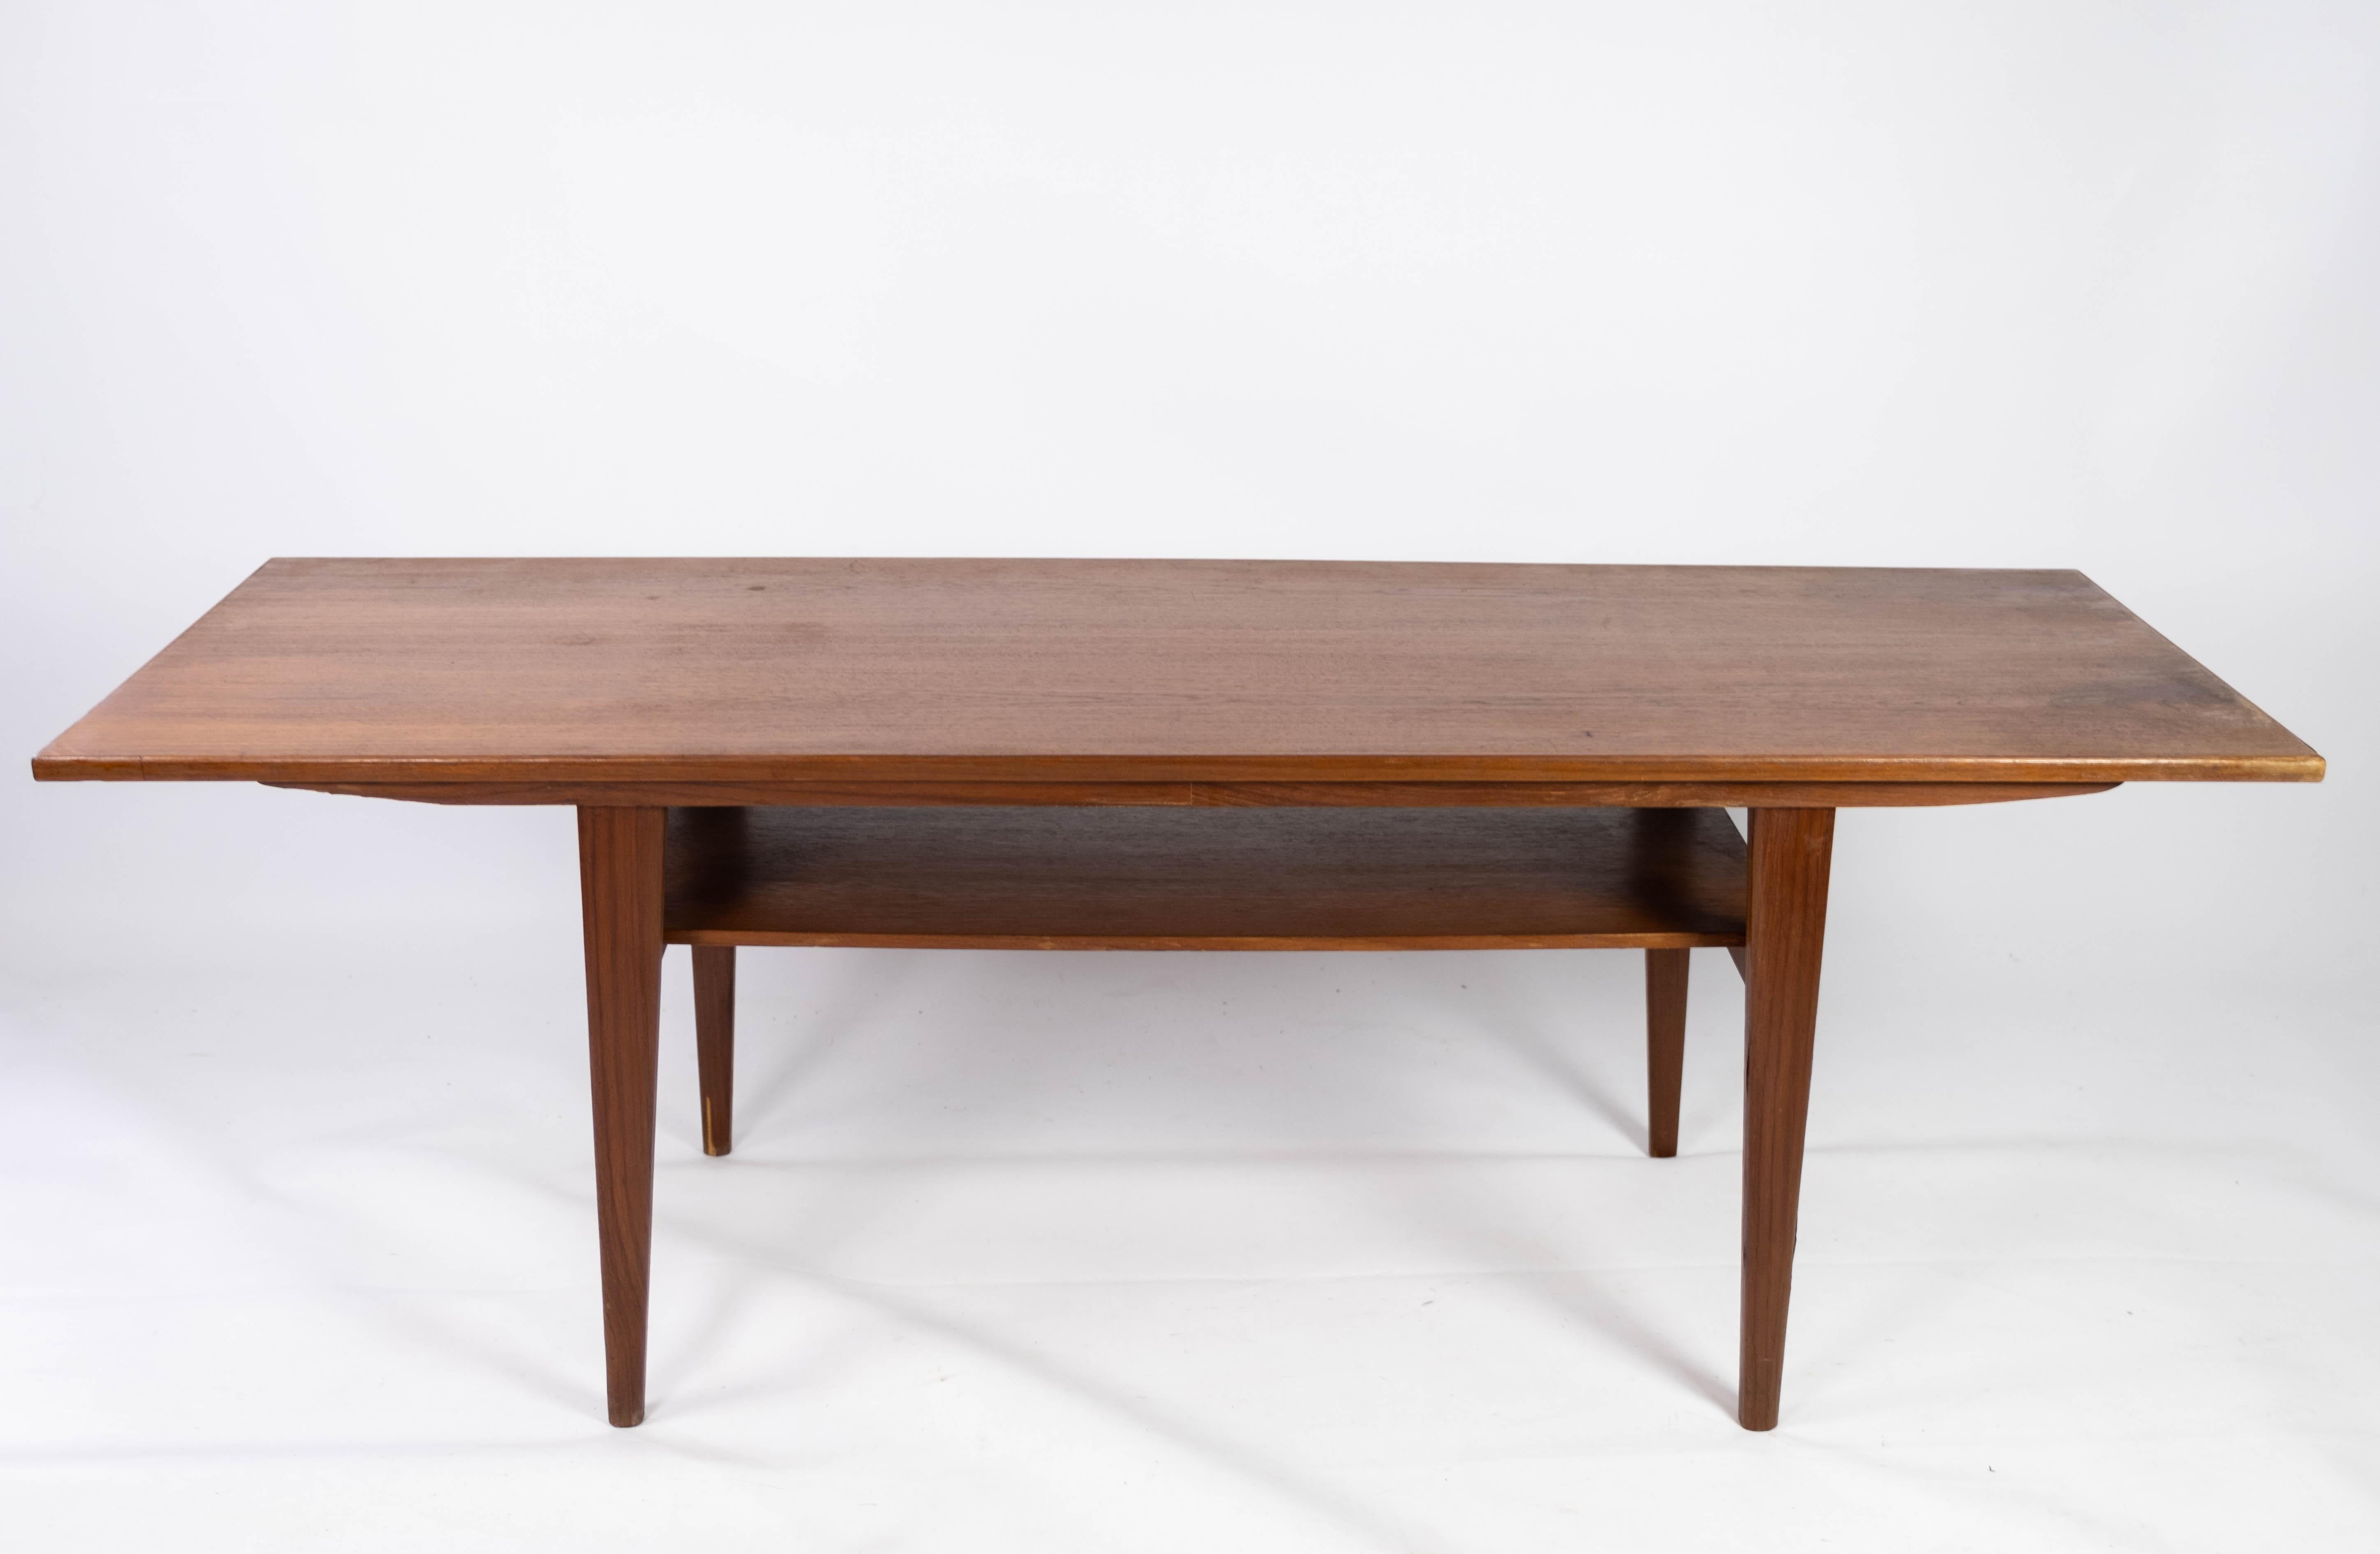 Cette table basse en teck, issue du design danois des années 1960, incarne l'élégance et la fonctionnalité caractéristiques du mobilier moderne du milieu du siècle. Fabriqué avec précision et souci du détail, il allie harmonieusement forme et